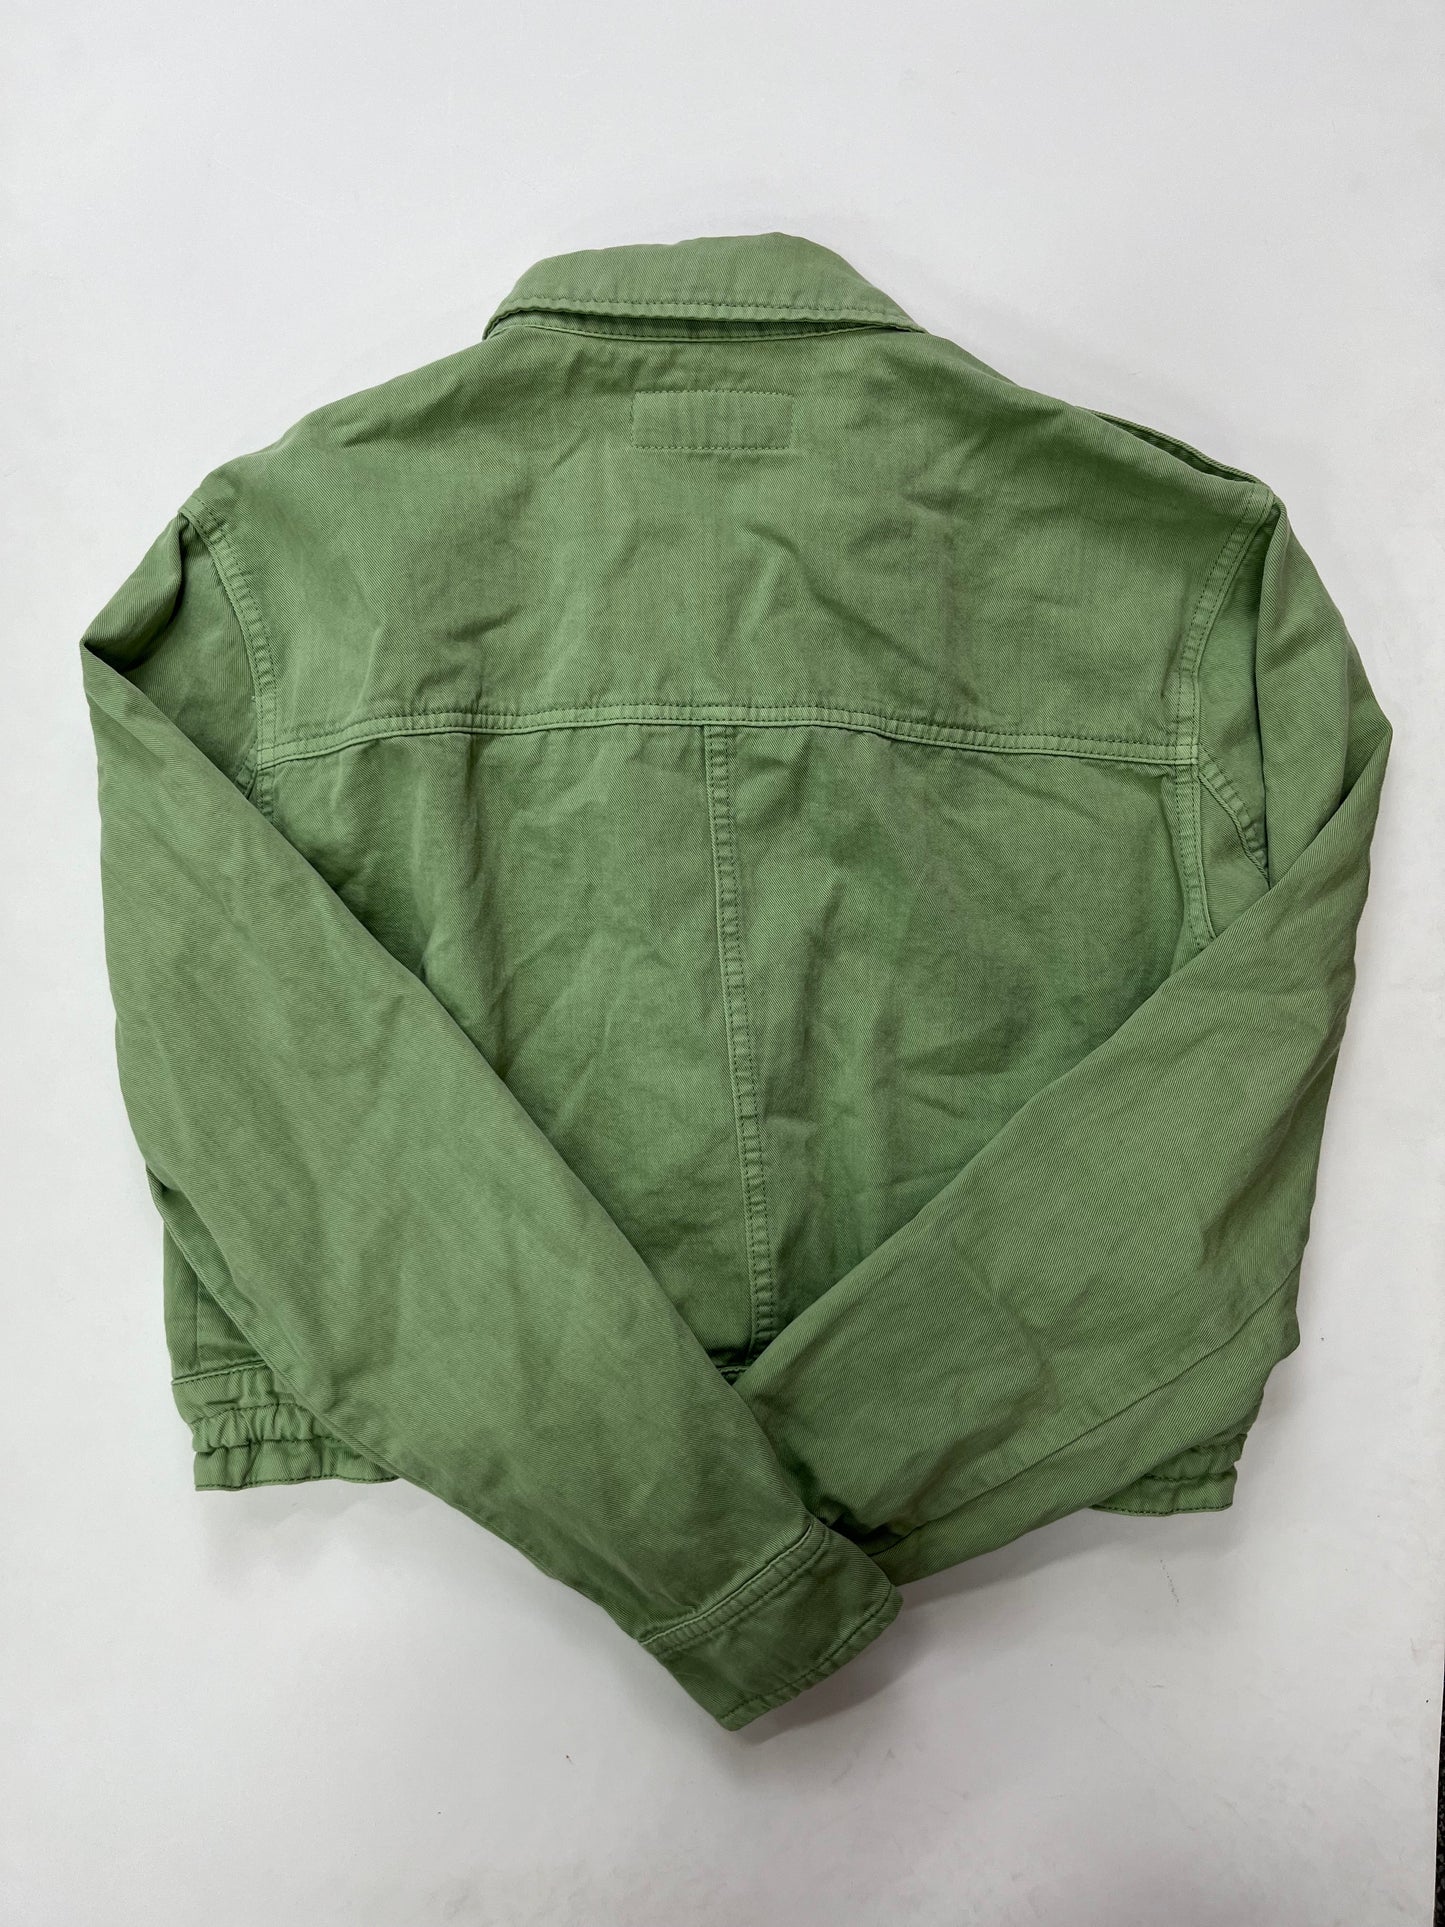 Jacket Denim By Blanknyc  Size: S